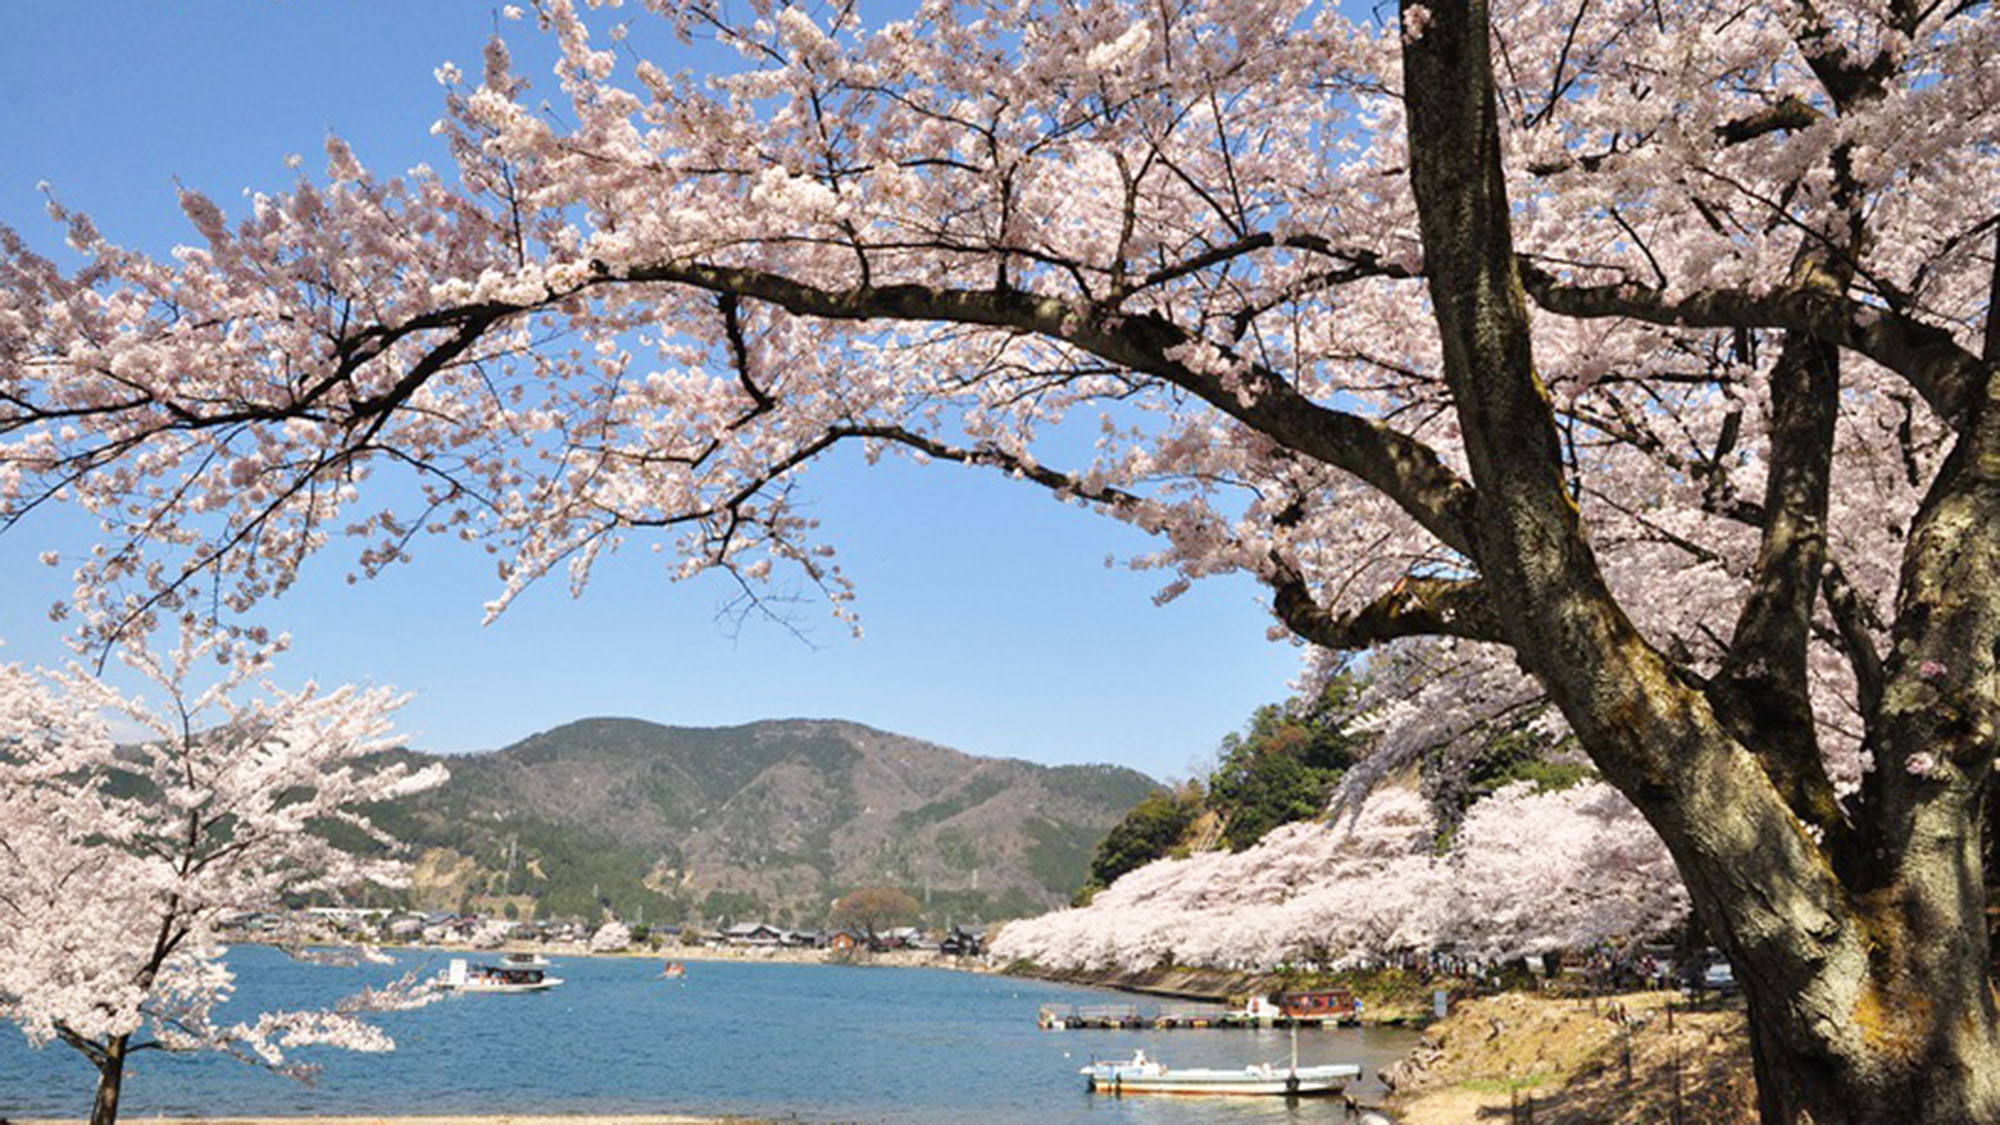 ・桜と琵琶湖が一緒に楽しめます。桜の時期にもぜひお越しください